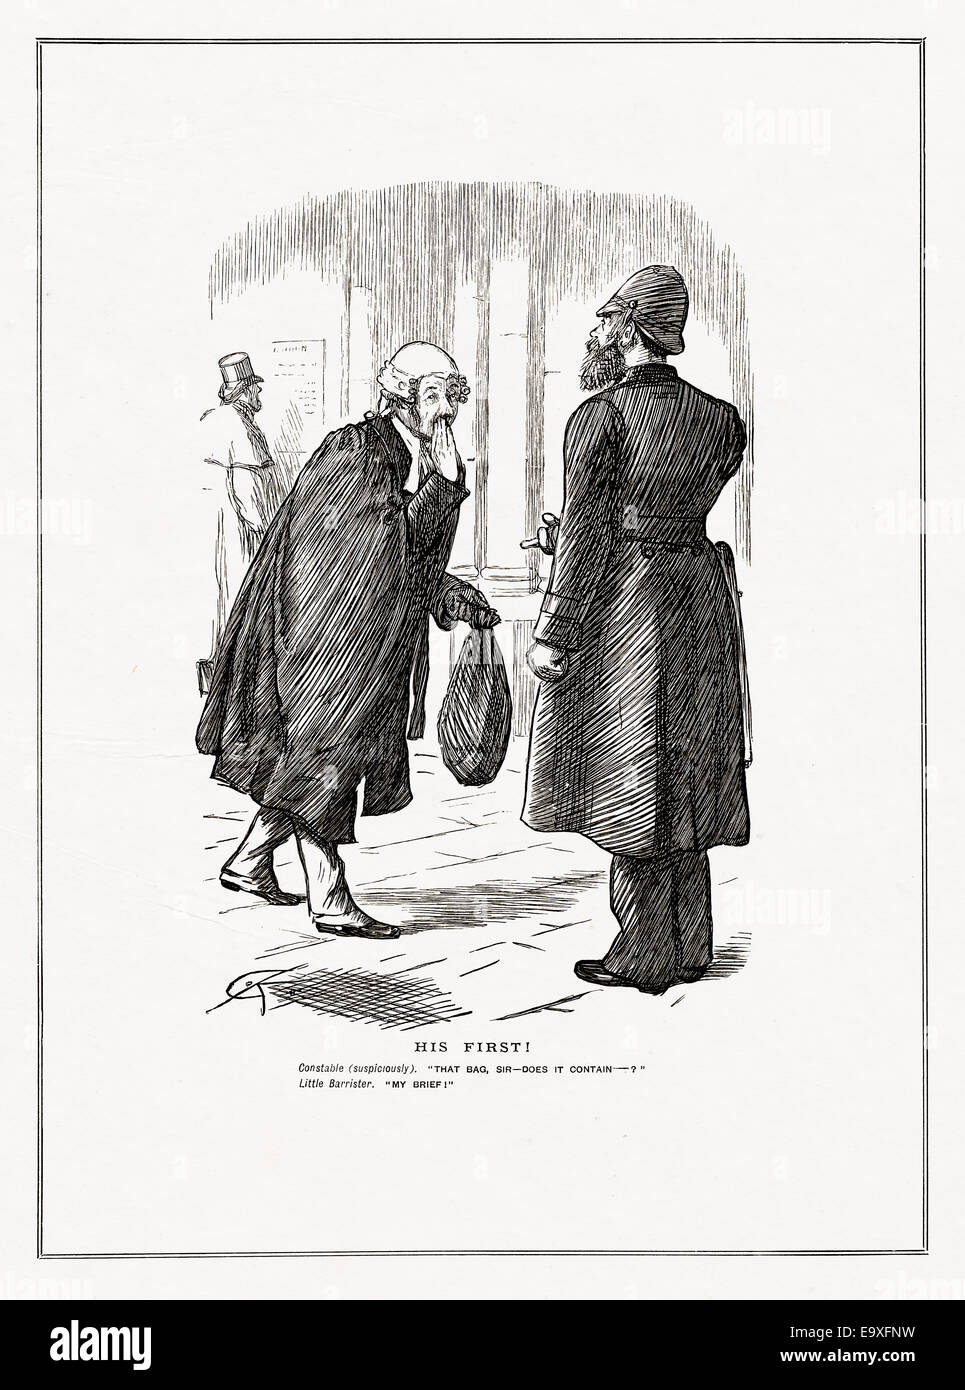 Victorienne de 1885 illustration humoristiques par Charles Keene, "son premier" - une blague Banque D'Images